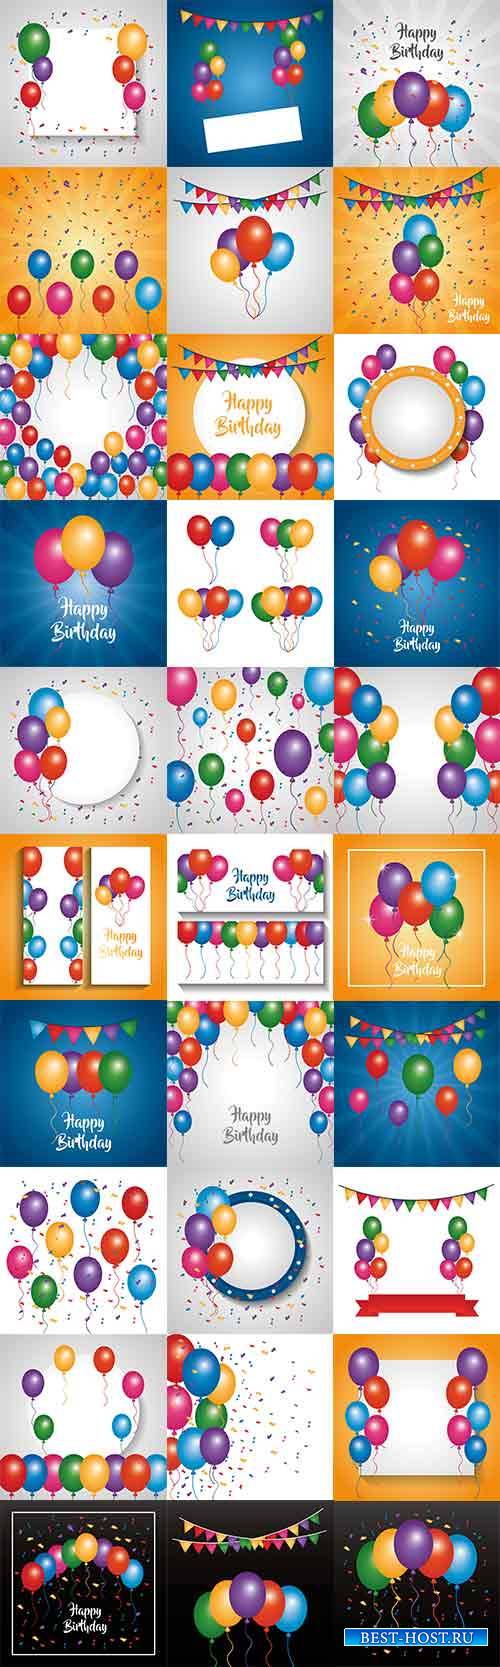 Разноцветные шары для праздников в векторе / Multicolored holiday balls in  ...